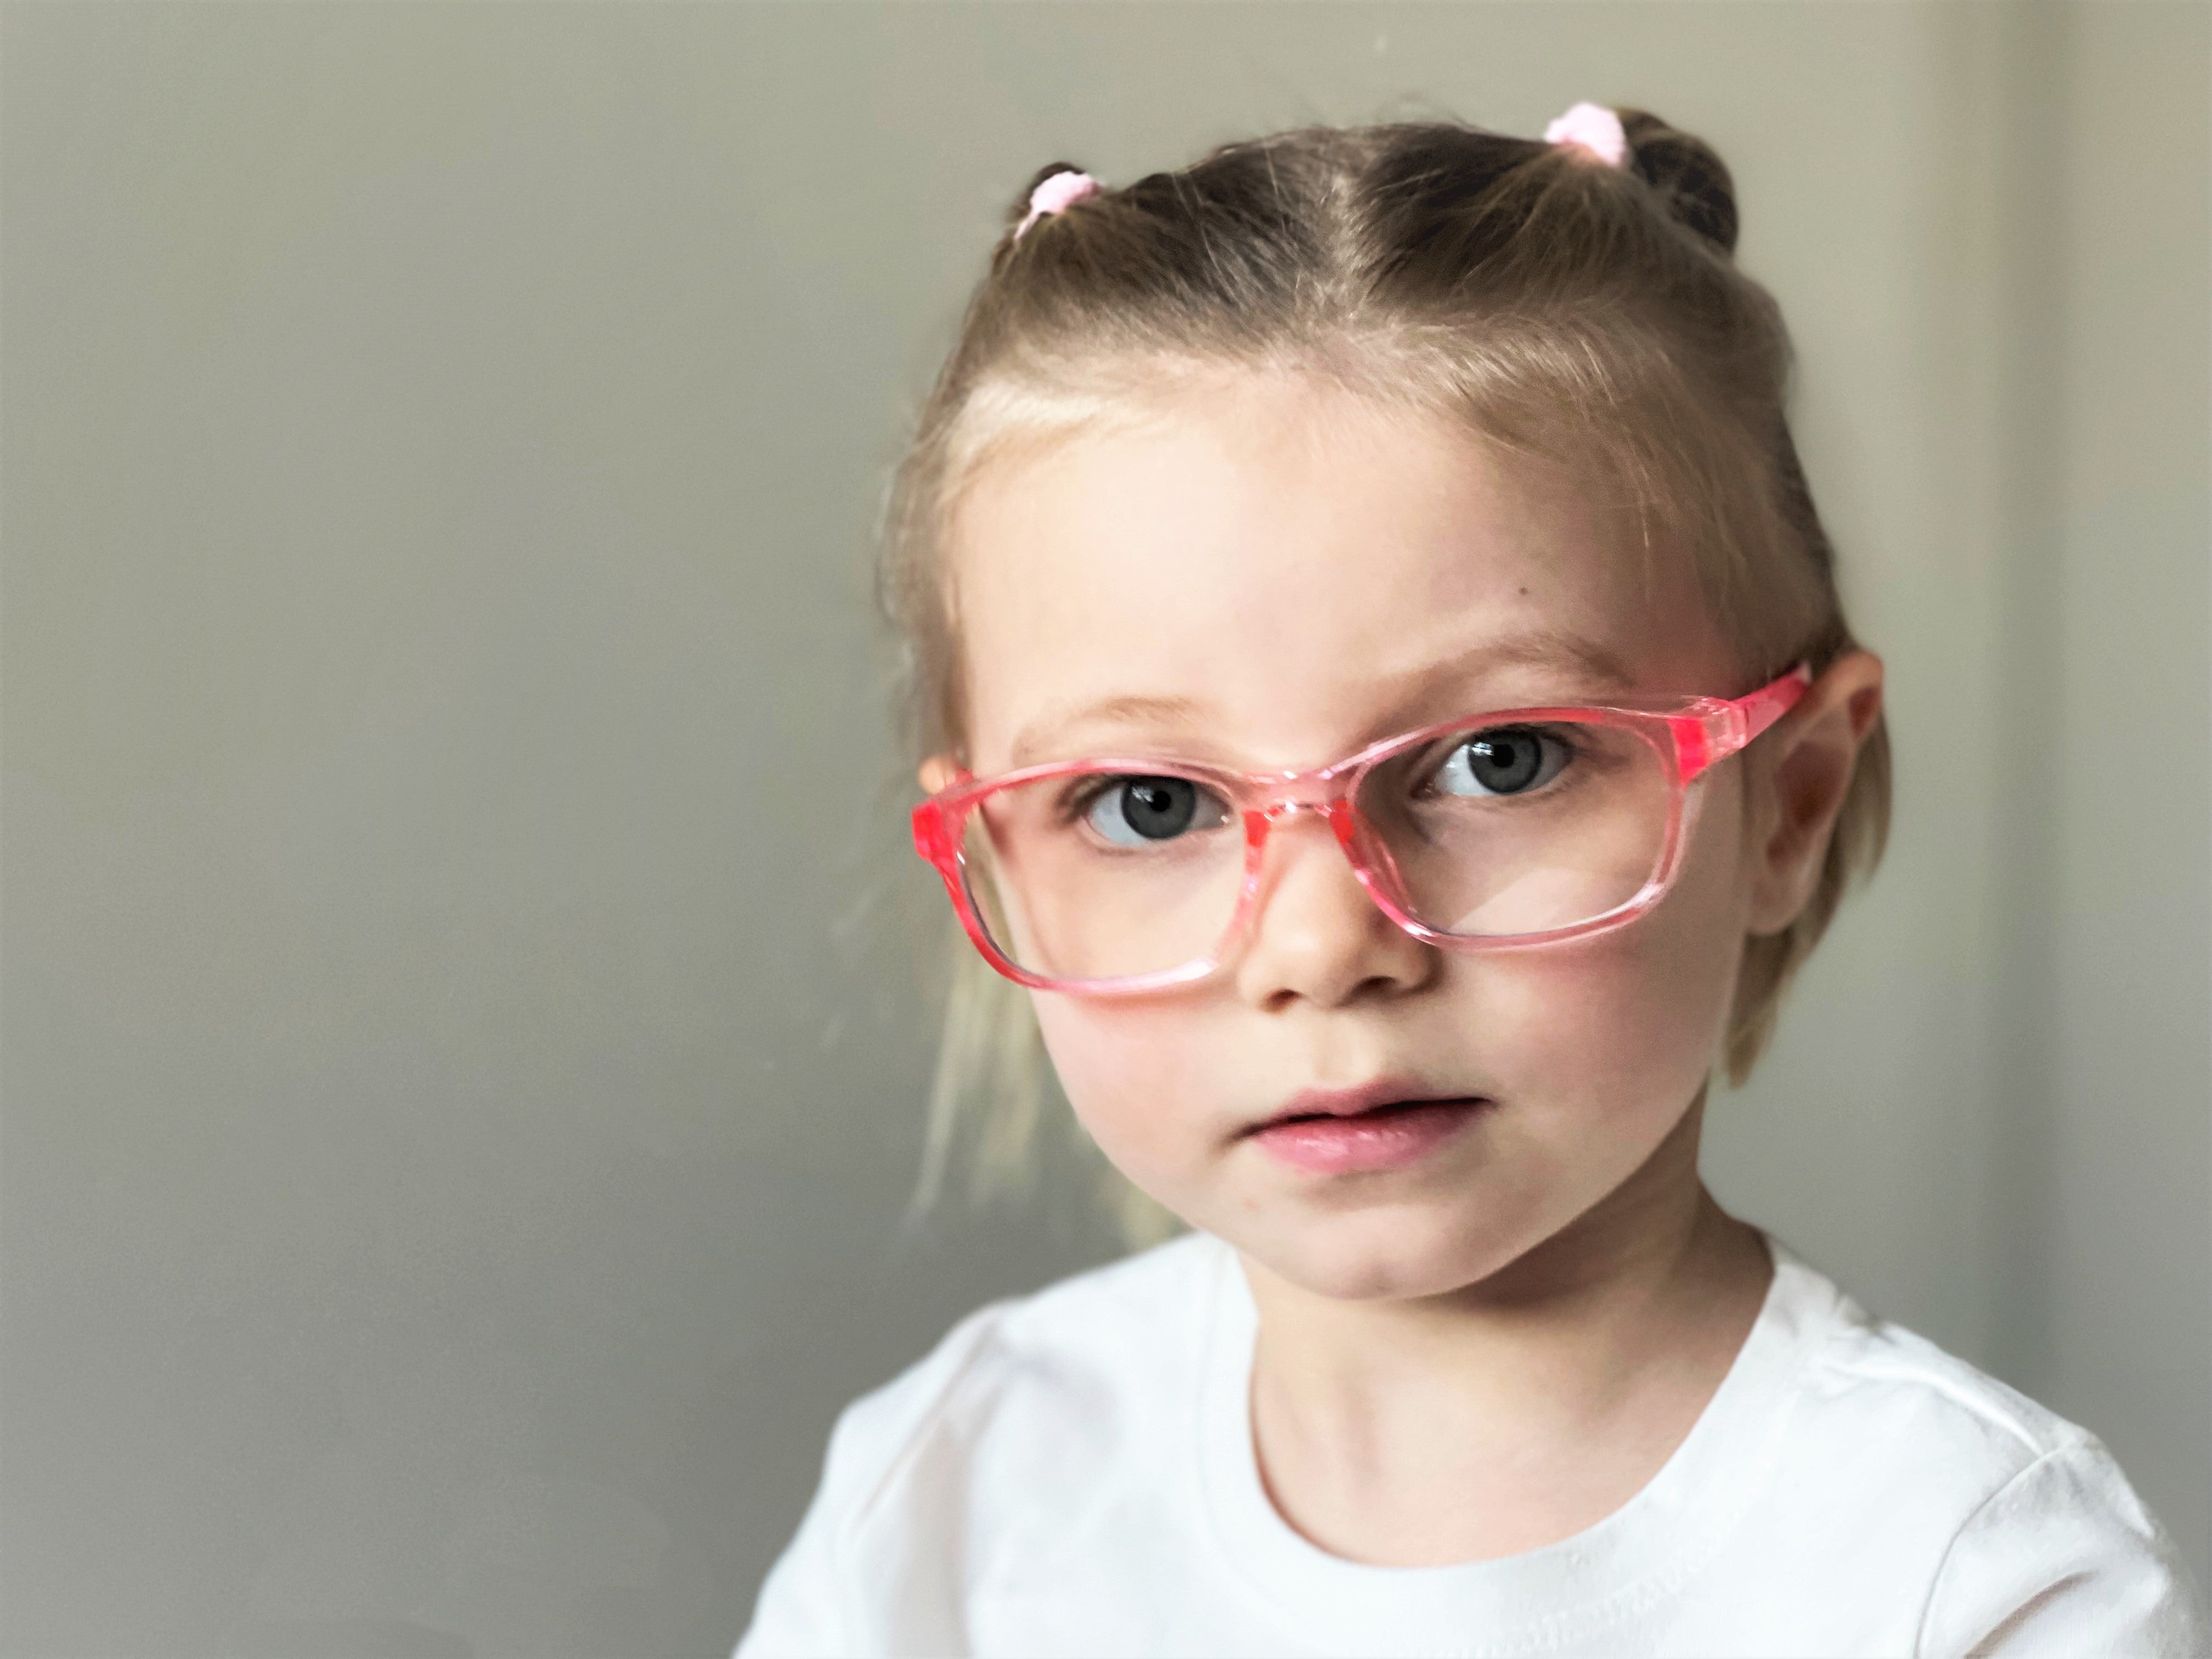 Should Kids Wear Safety Glasses? – Optical Factor